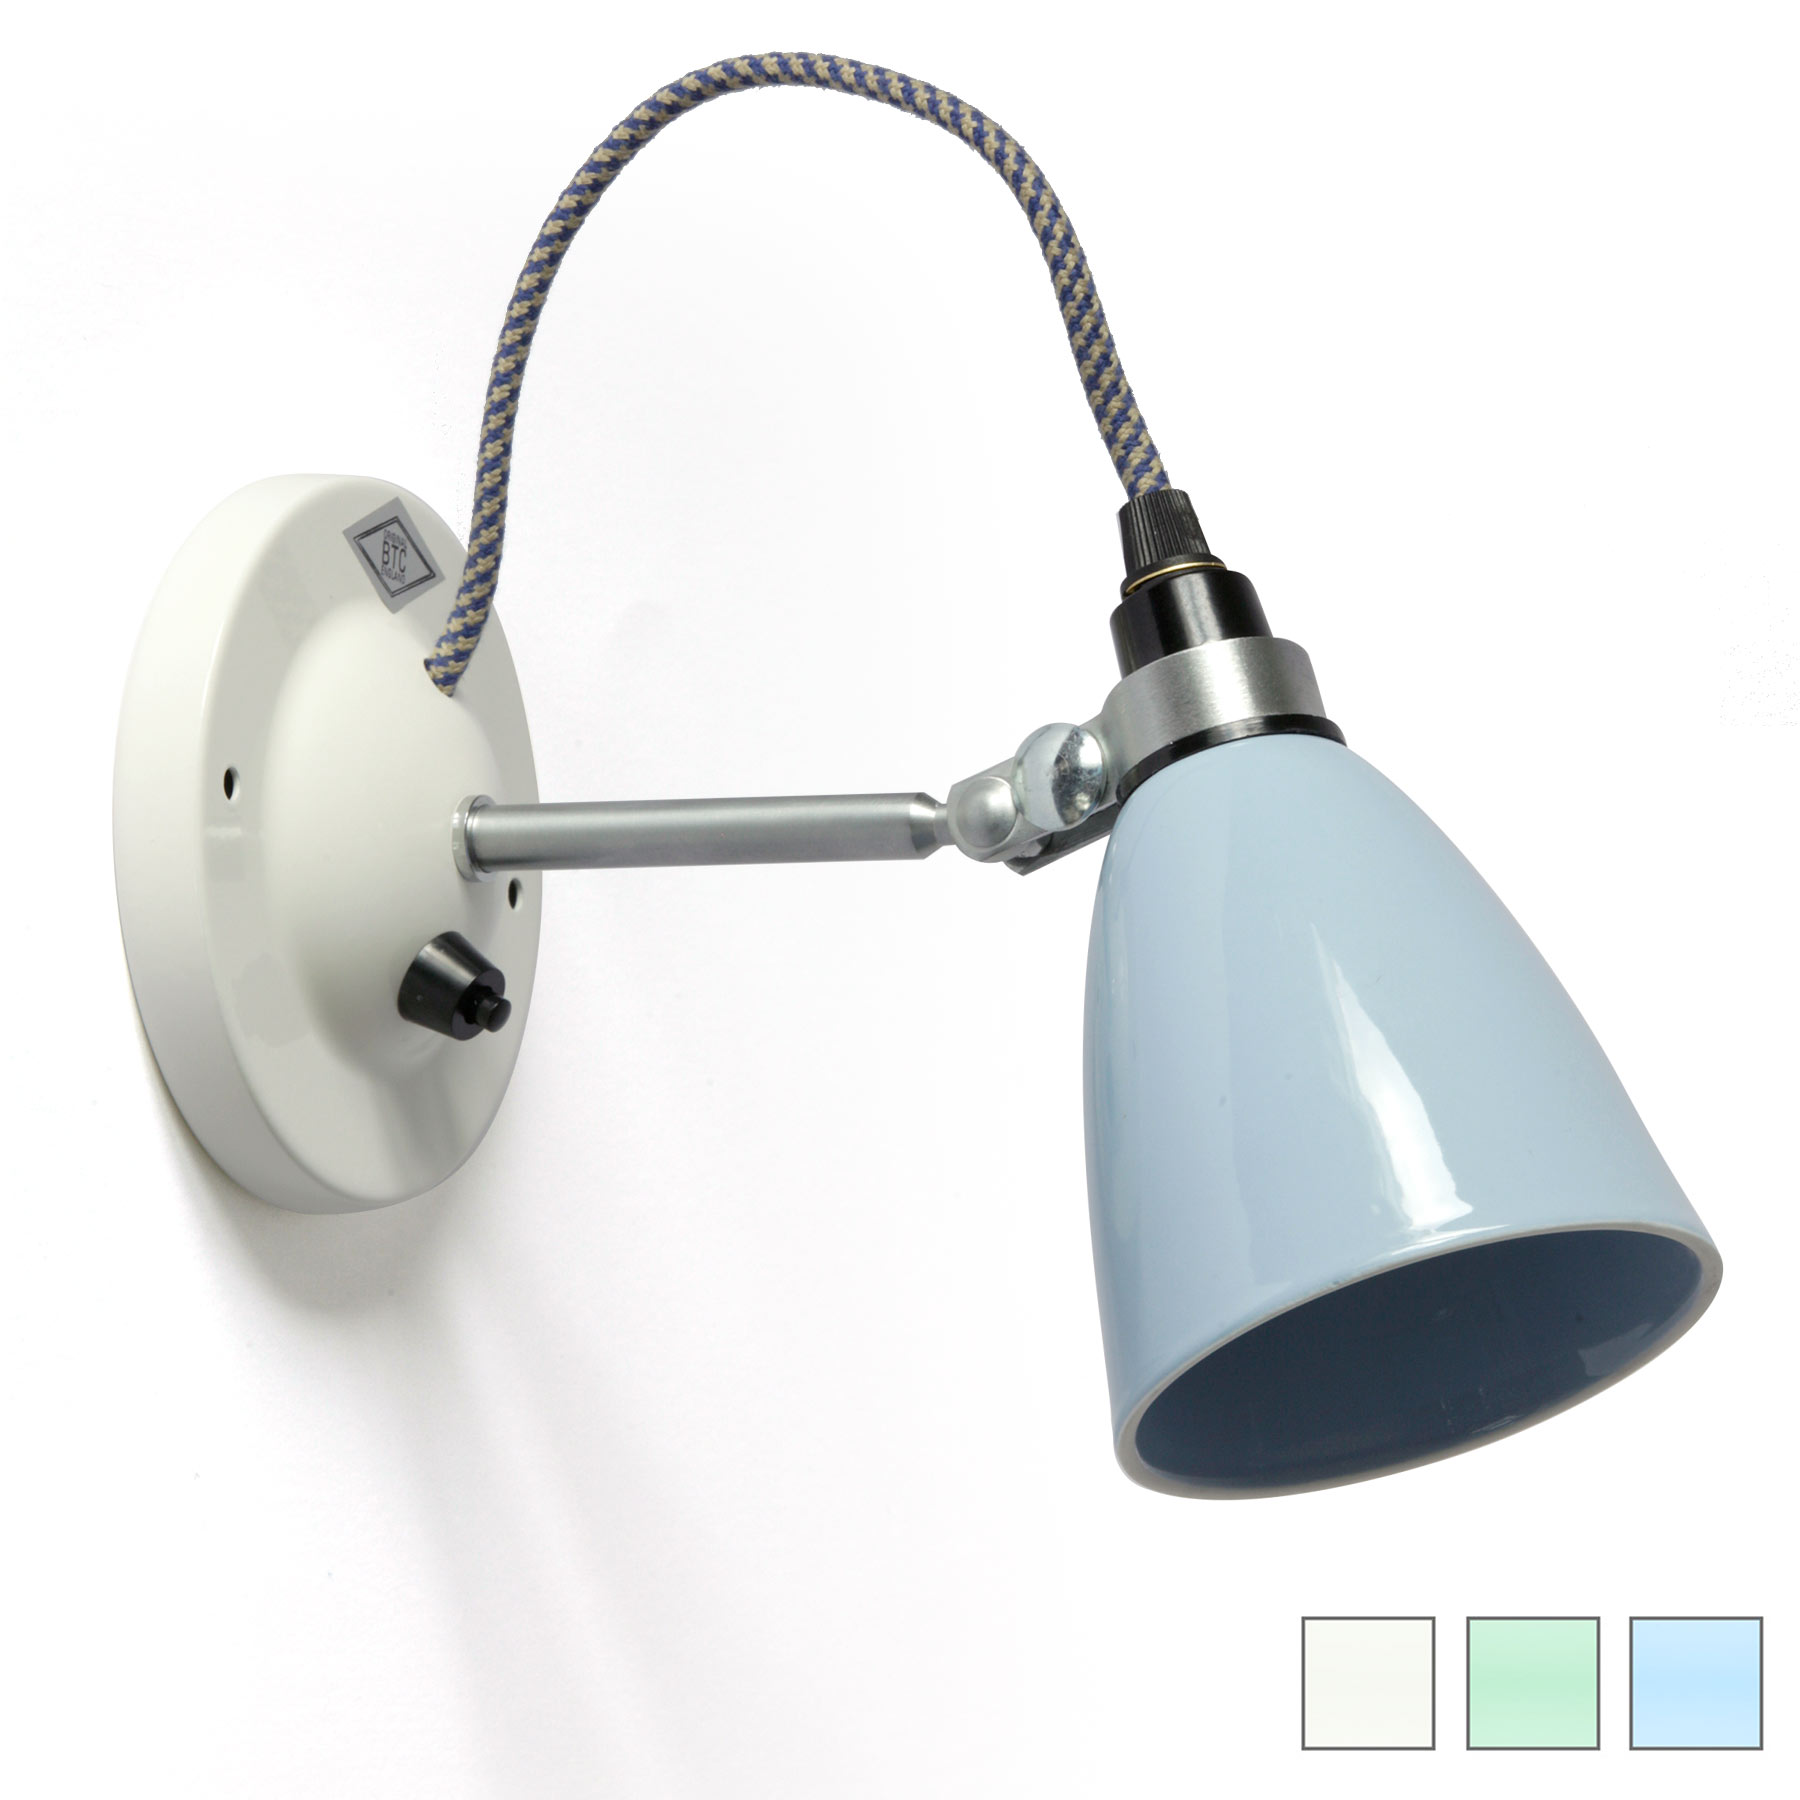 Kleine Porzellan-Wandlampe HECTOR SMALL: Wandlampe HECTOR SMALL: hier die Schalter-Version mit hellblauem Porzellan-Schirm